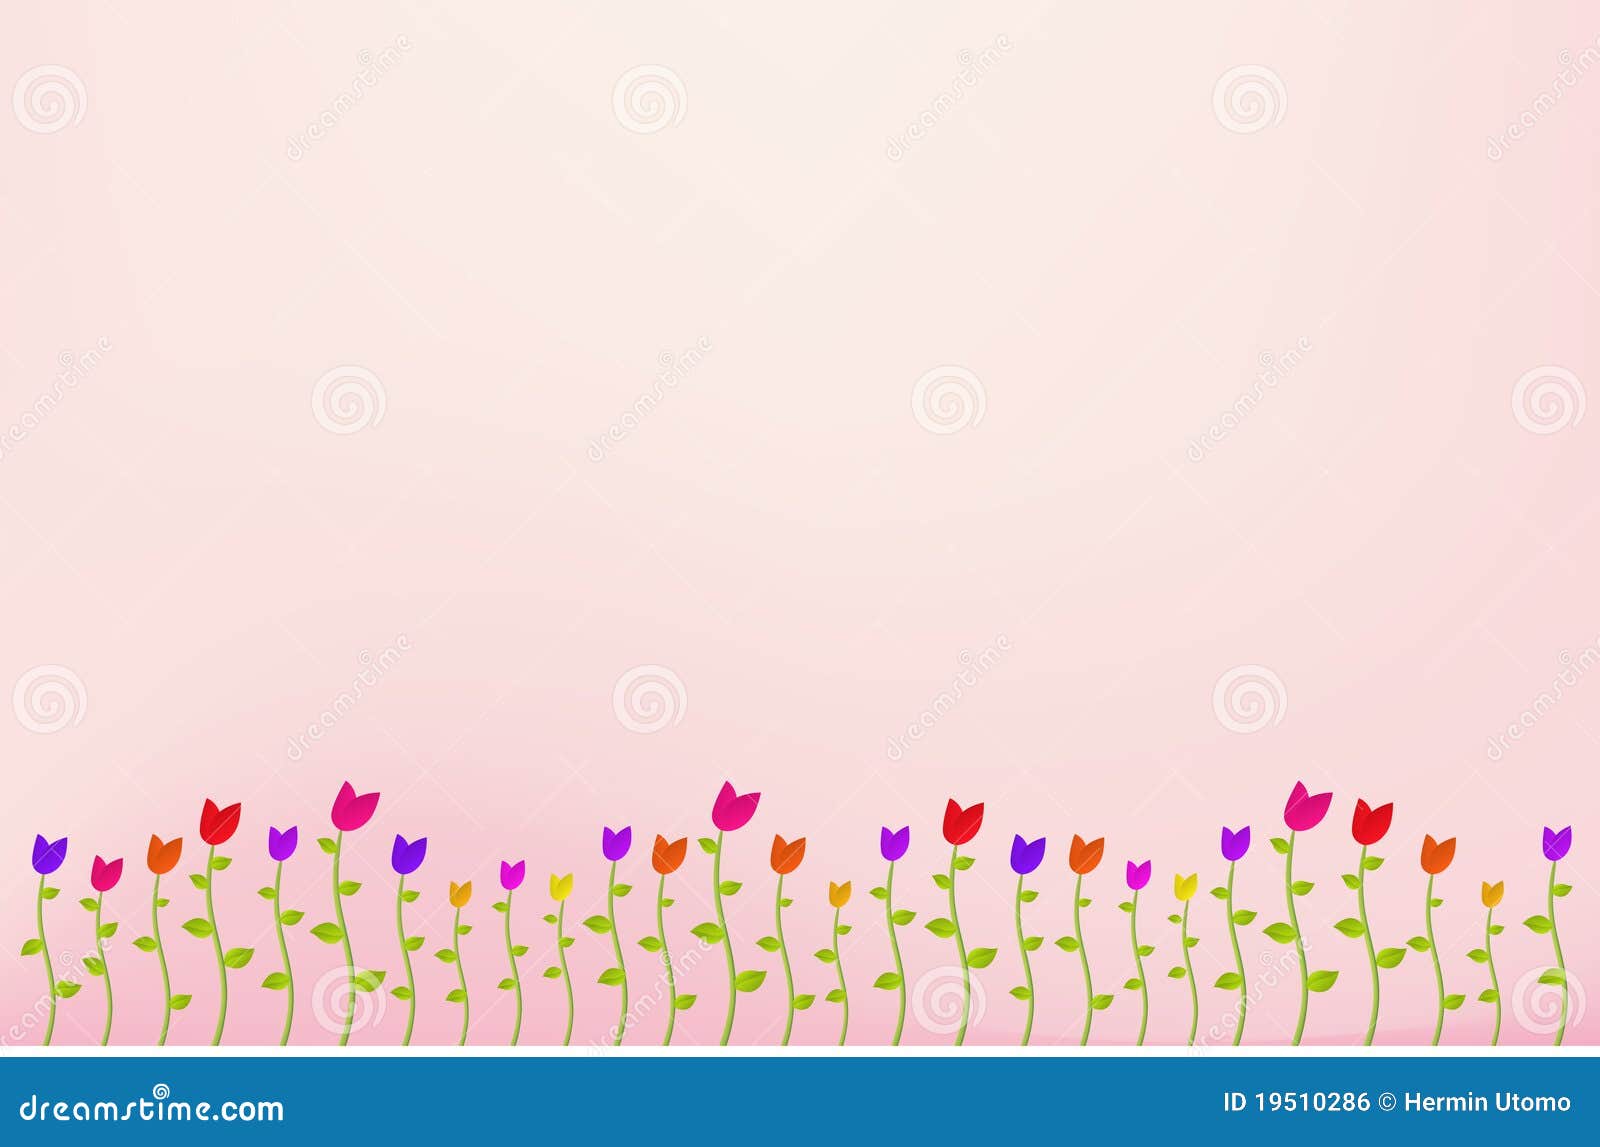 Flower Garden Background stock vector. Illustration of ...
